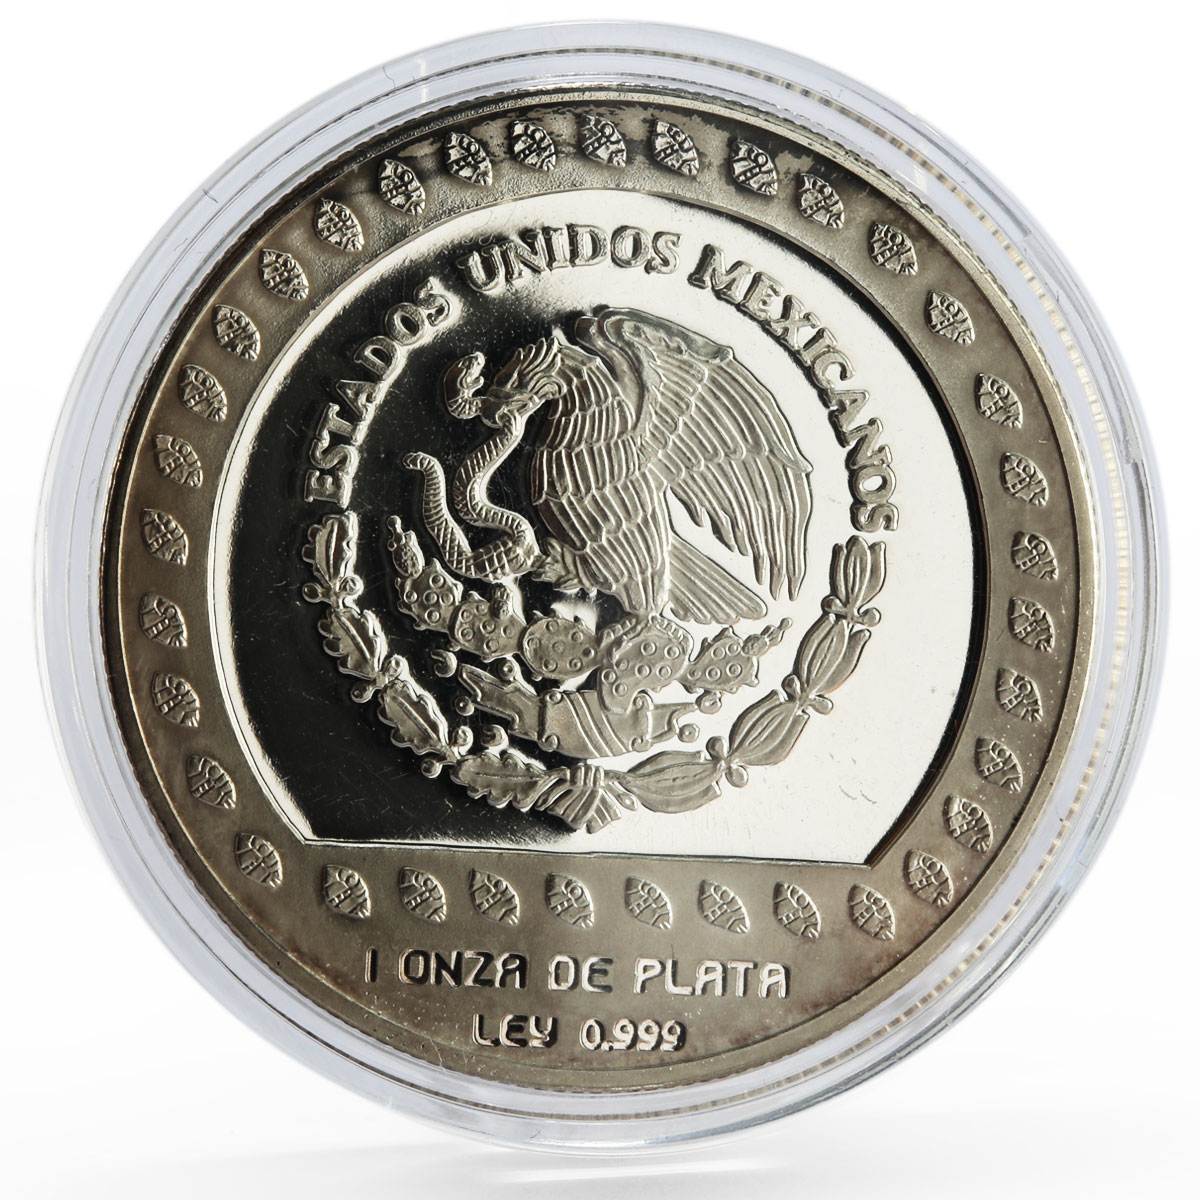 Mexico 100 pesos Guerrero Aguila proof silver coin 1992